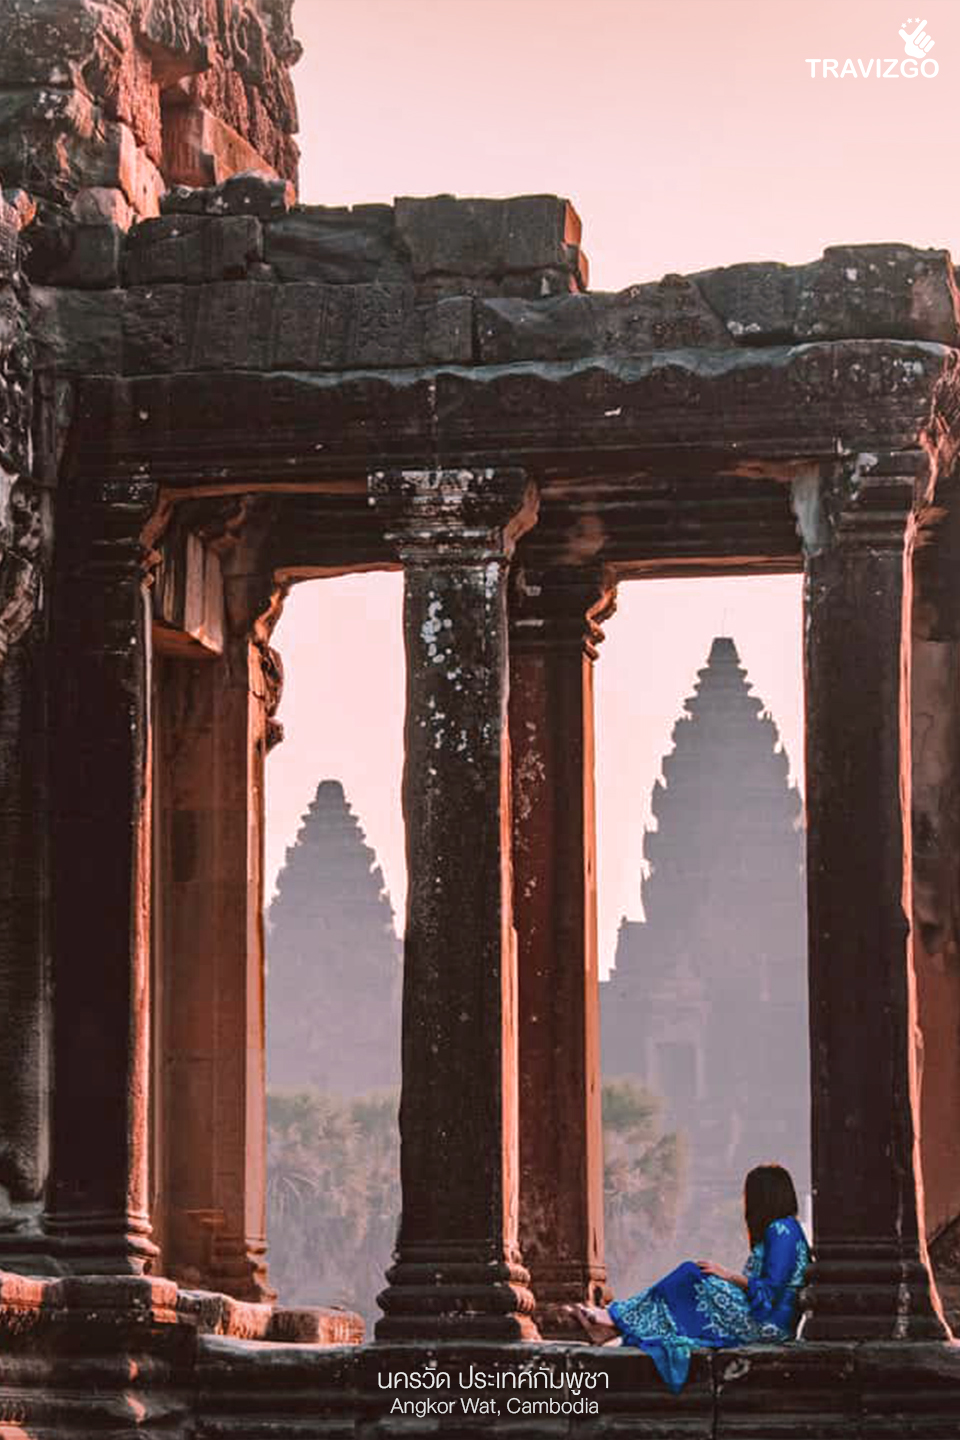 นครวัด ประเทศกัมพูชา (Angkor Wat, Cambodia)